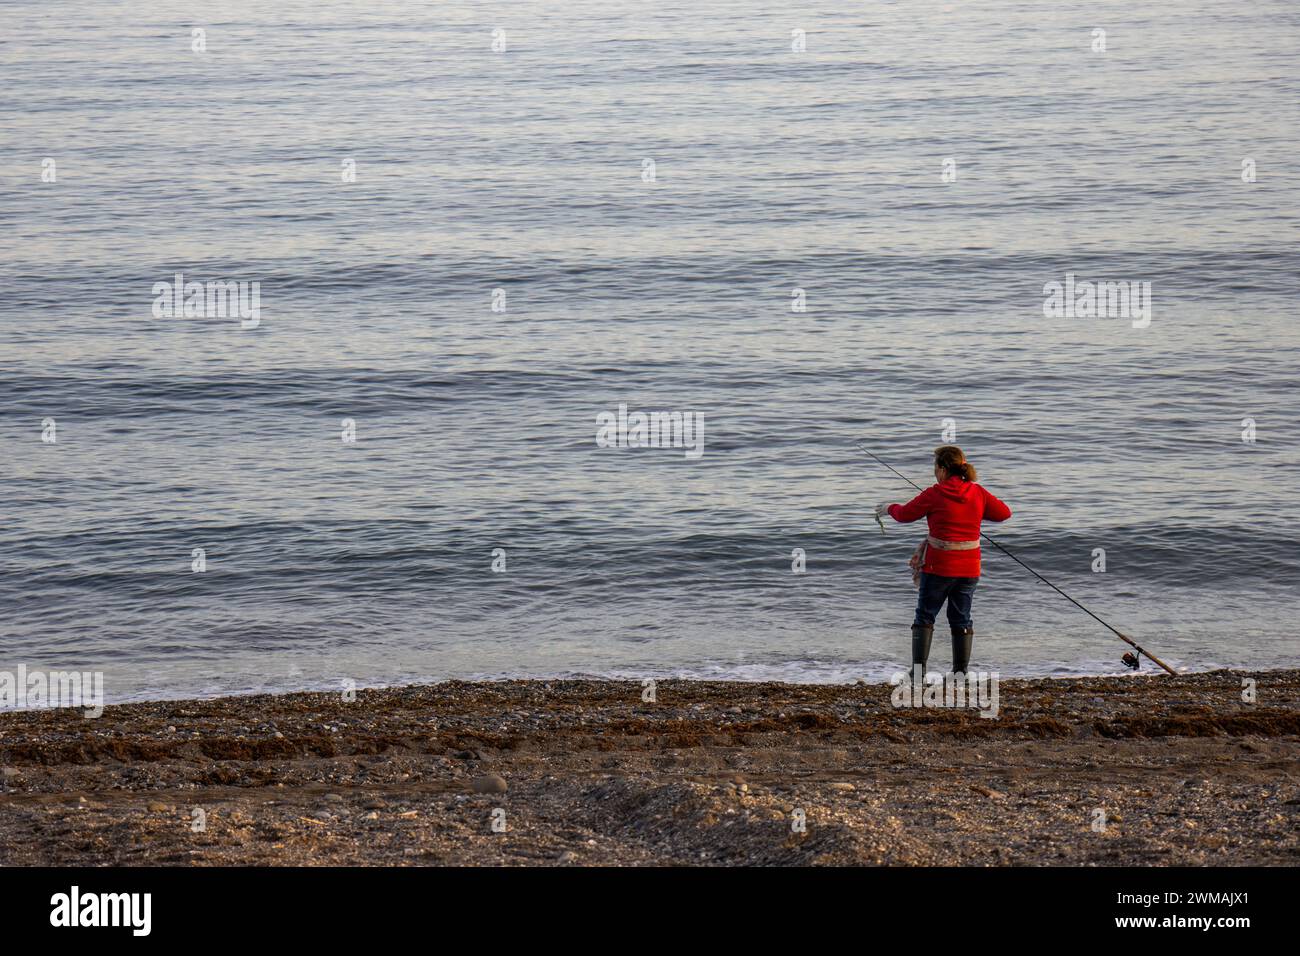 Mujer pescando con caña a la orilla del mar, San Pedro de Alcántara, Marbella, España Stock Photo